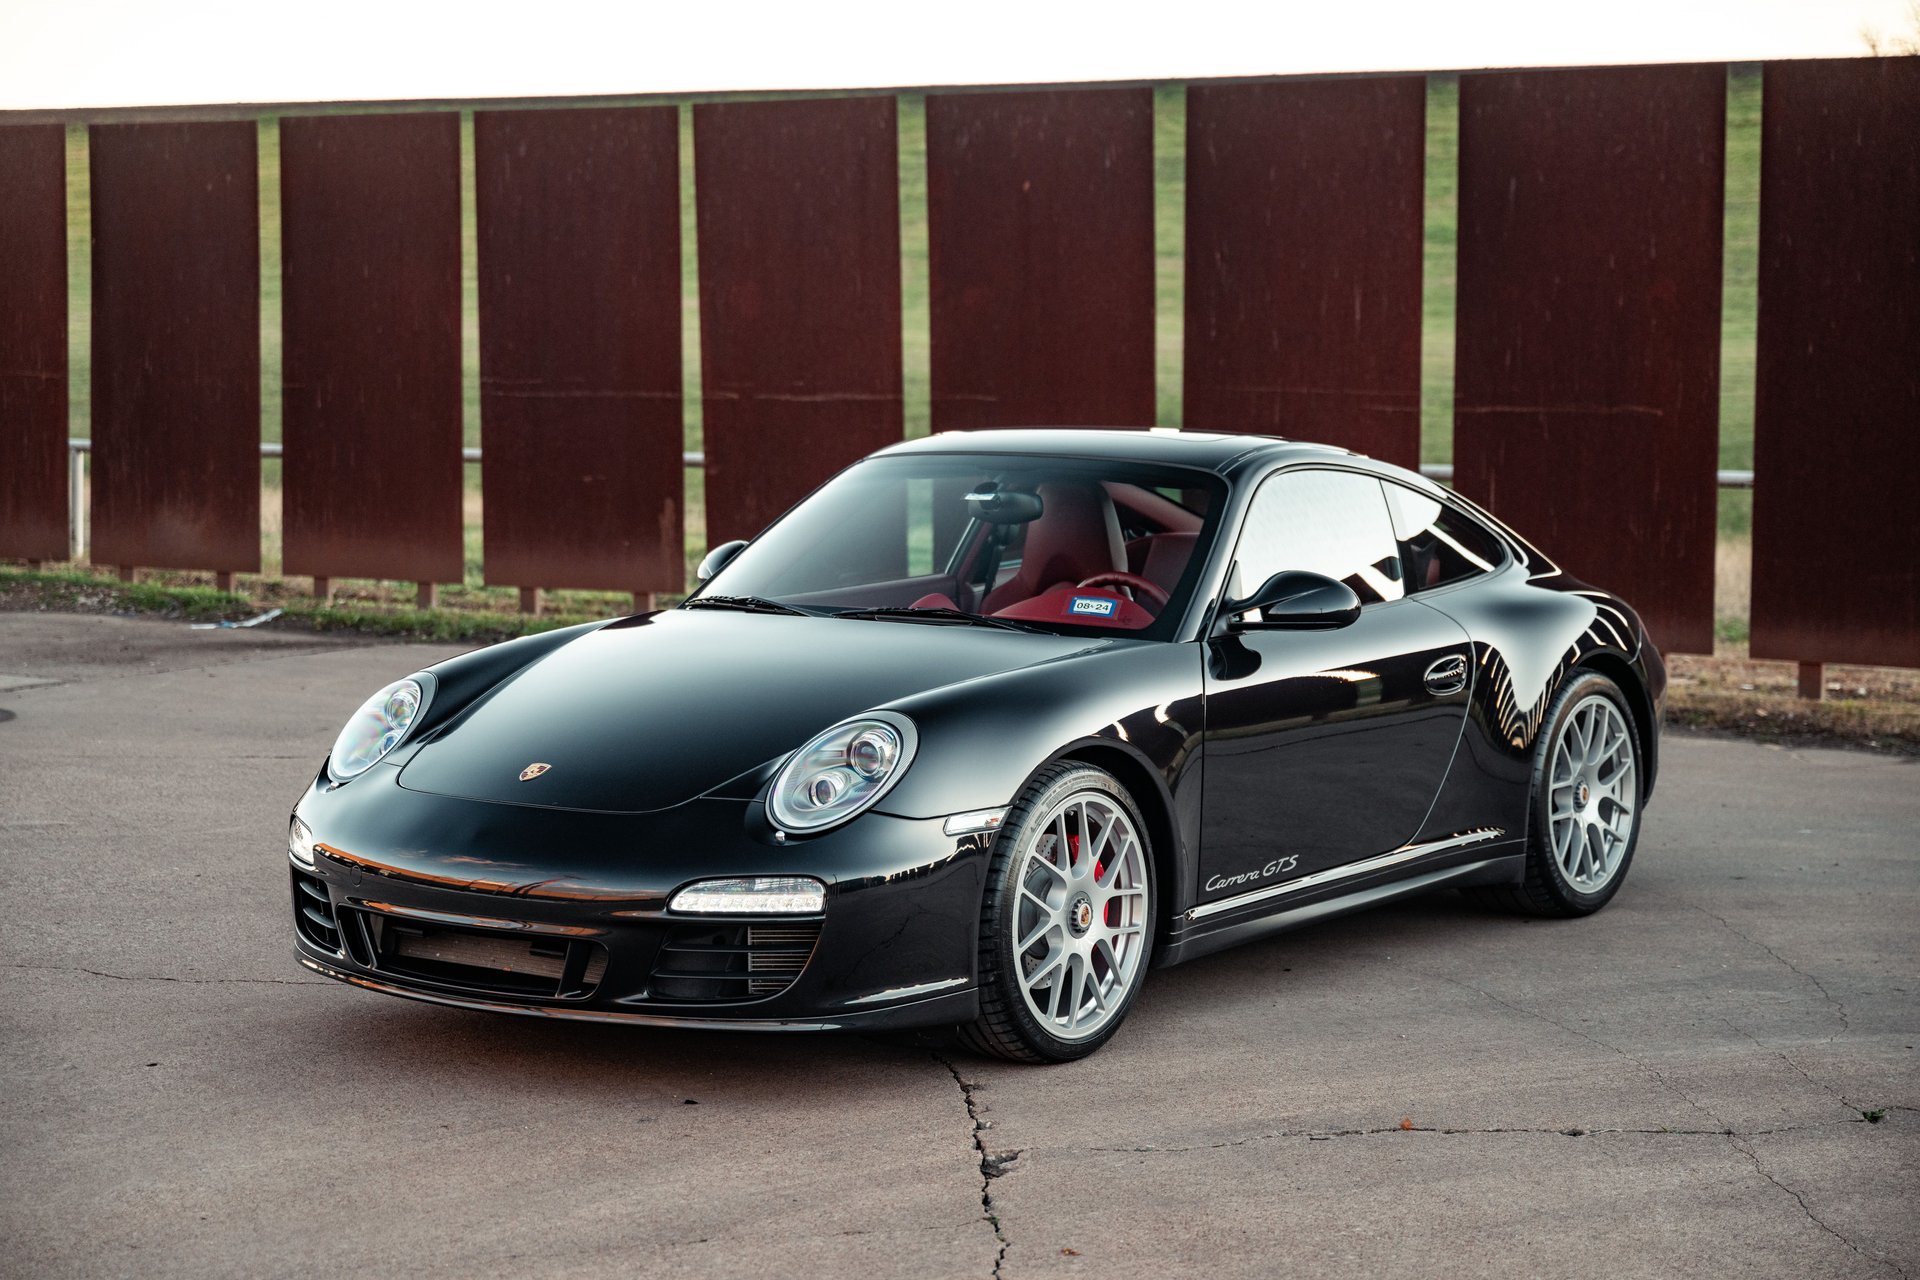 For Sale 2012 Porsche 911